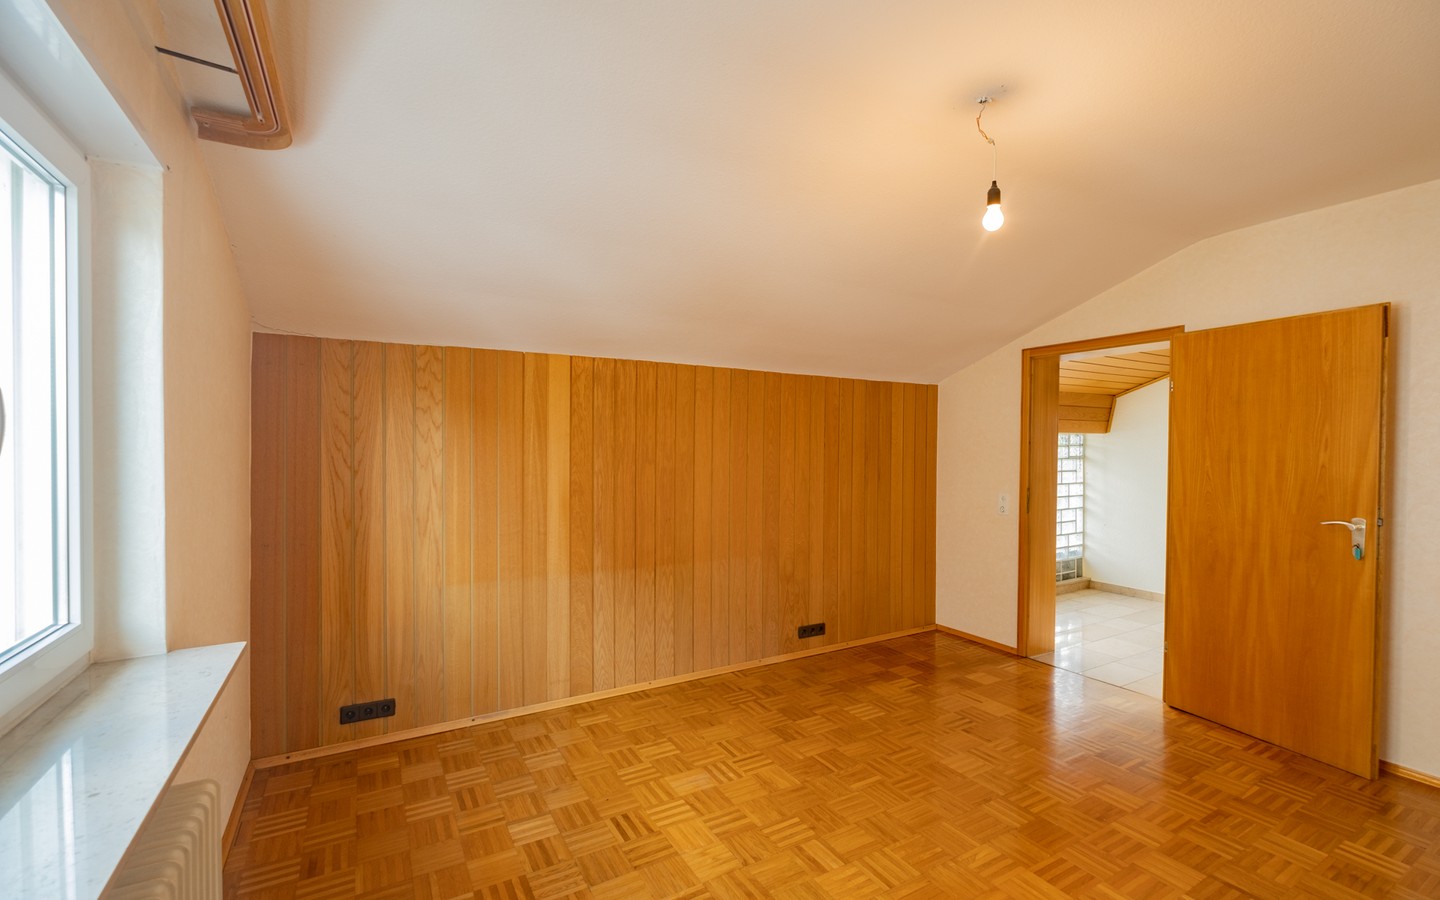 Zimmer 2 im DG - Leimen: freistehendes Haus in Splitlevelbauweise, mit 2 Garagen, 2 Stellplätzen und Garten